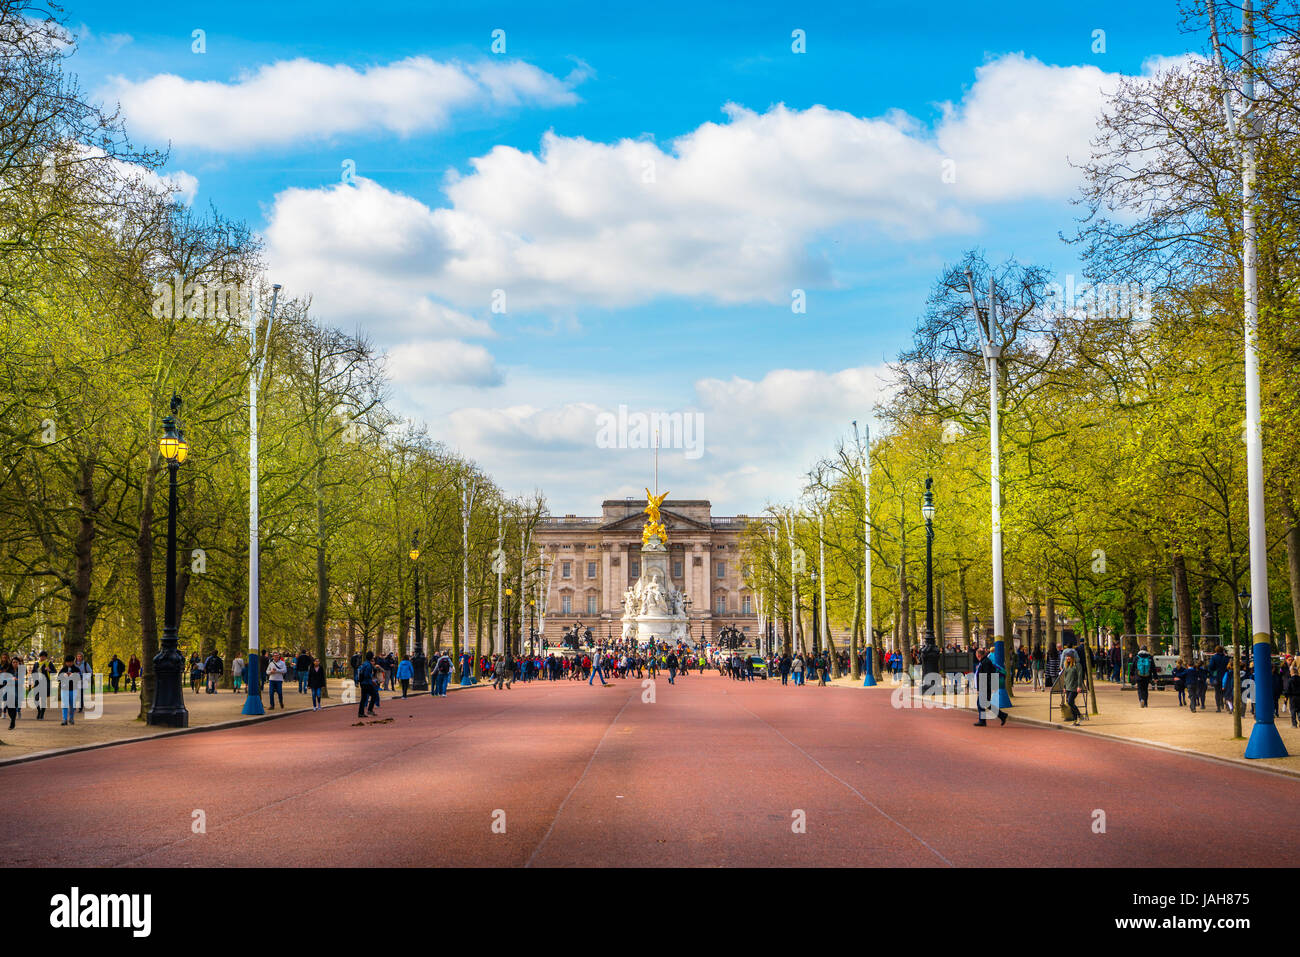 El Palacio de Buckingham y The Mall Street, Westminster, London, England, Reino Unido Foto de stock